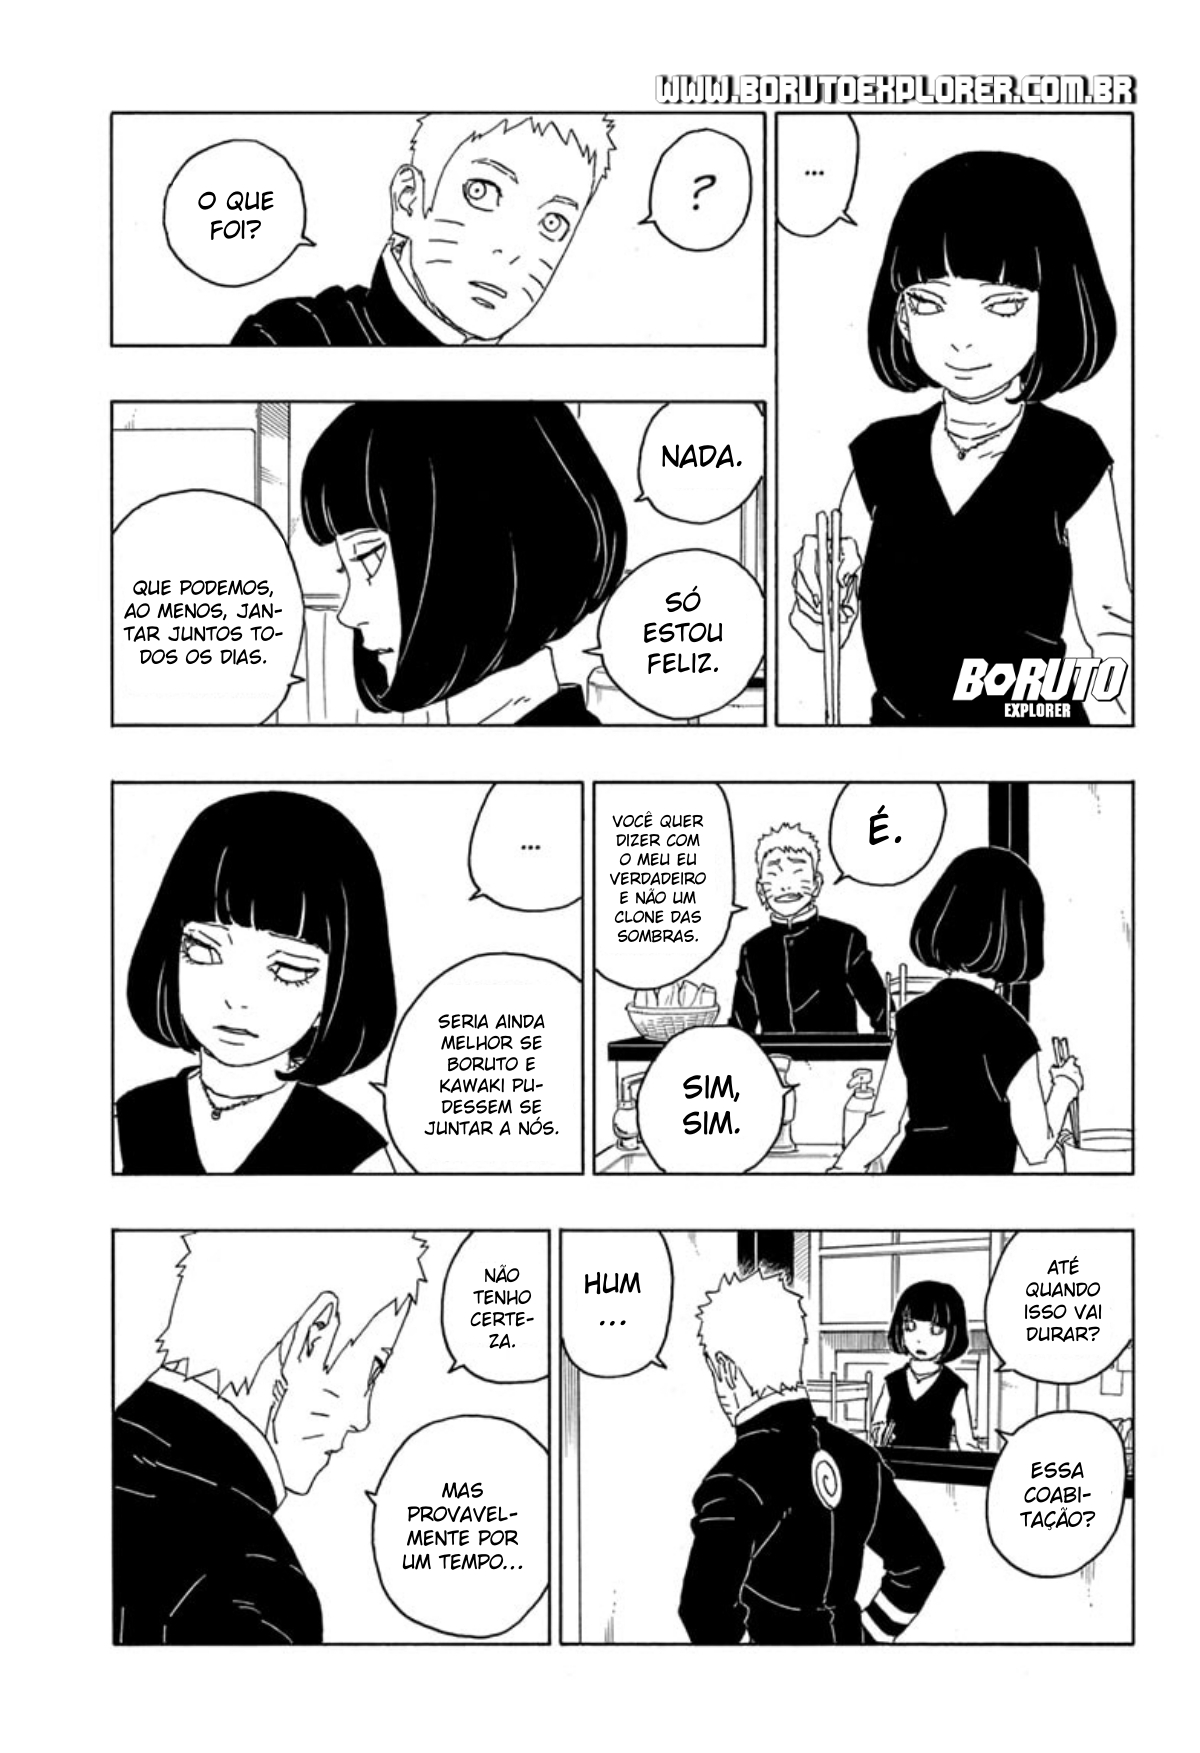 Boruto manga capítulo 77 027